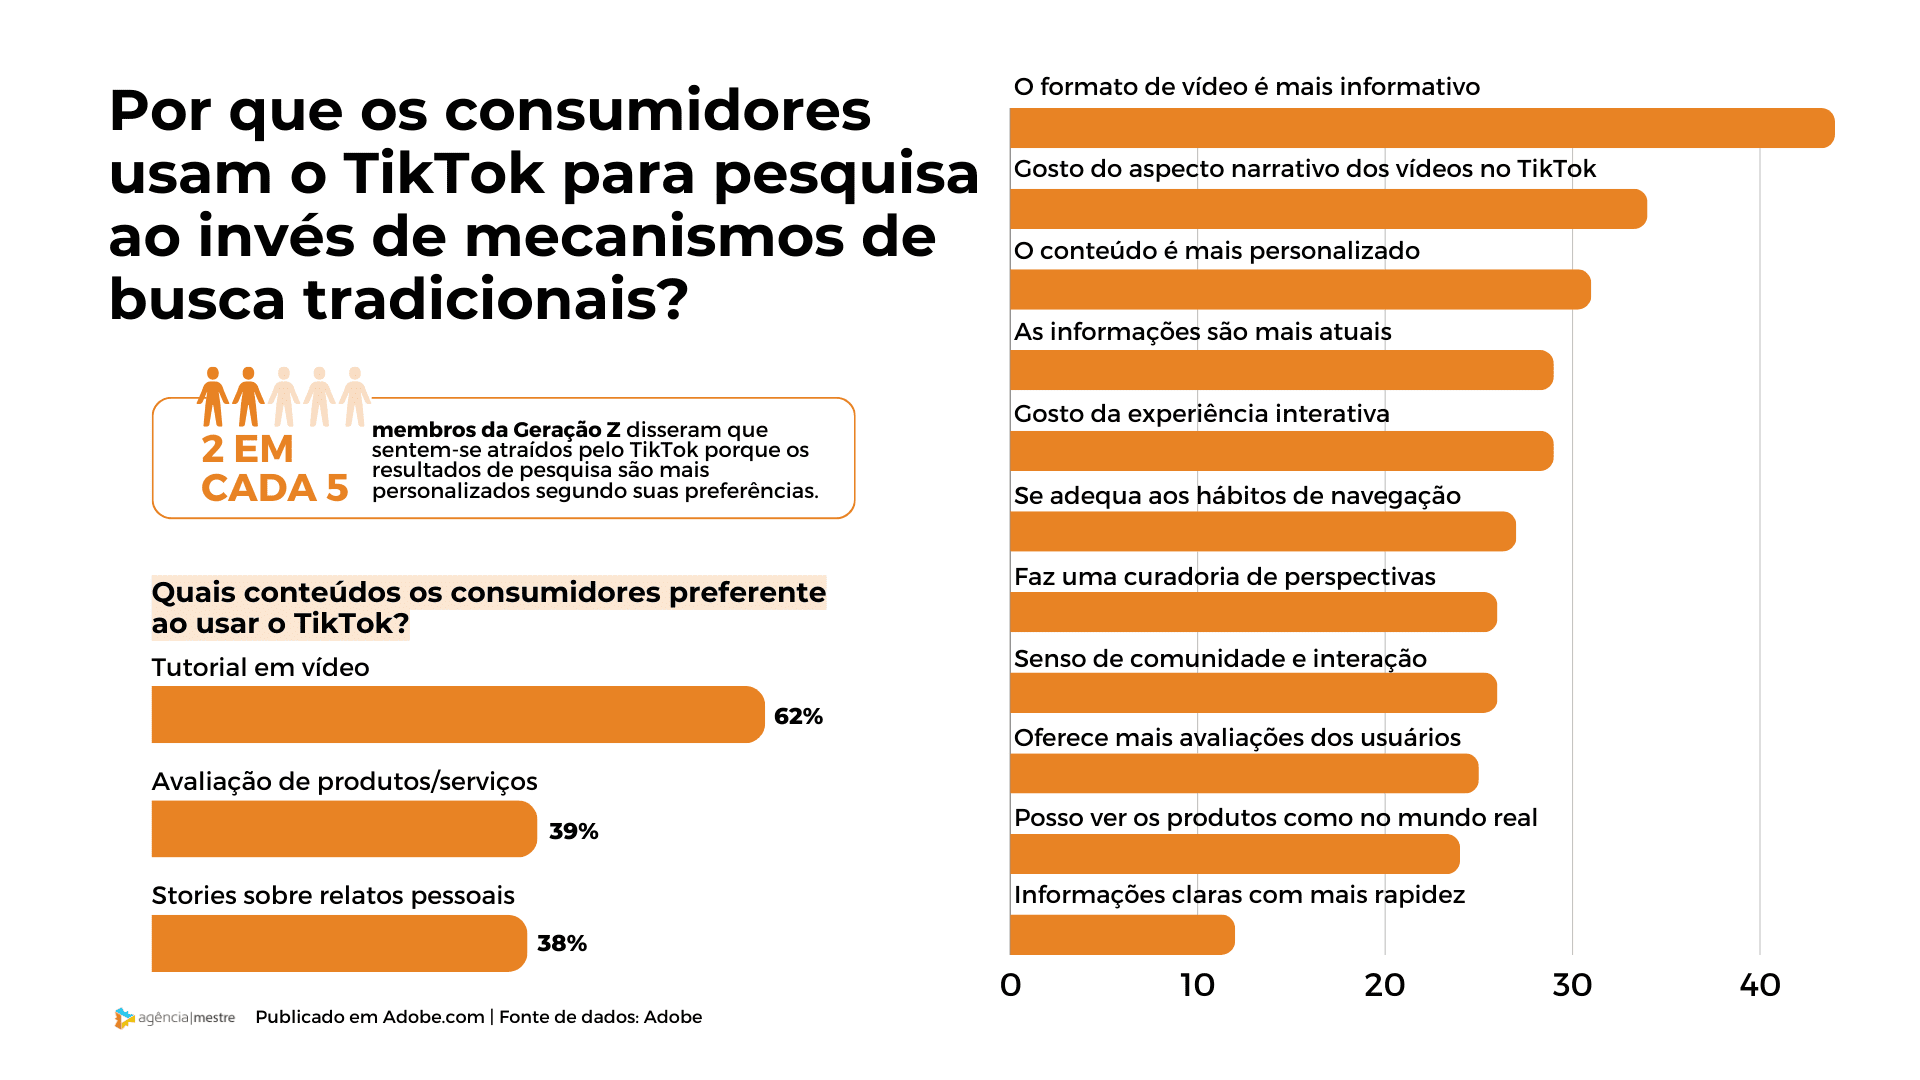 Por que os consumidores pesquisam no TikTok?